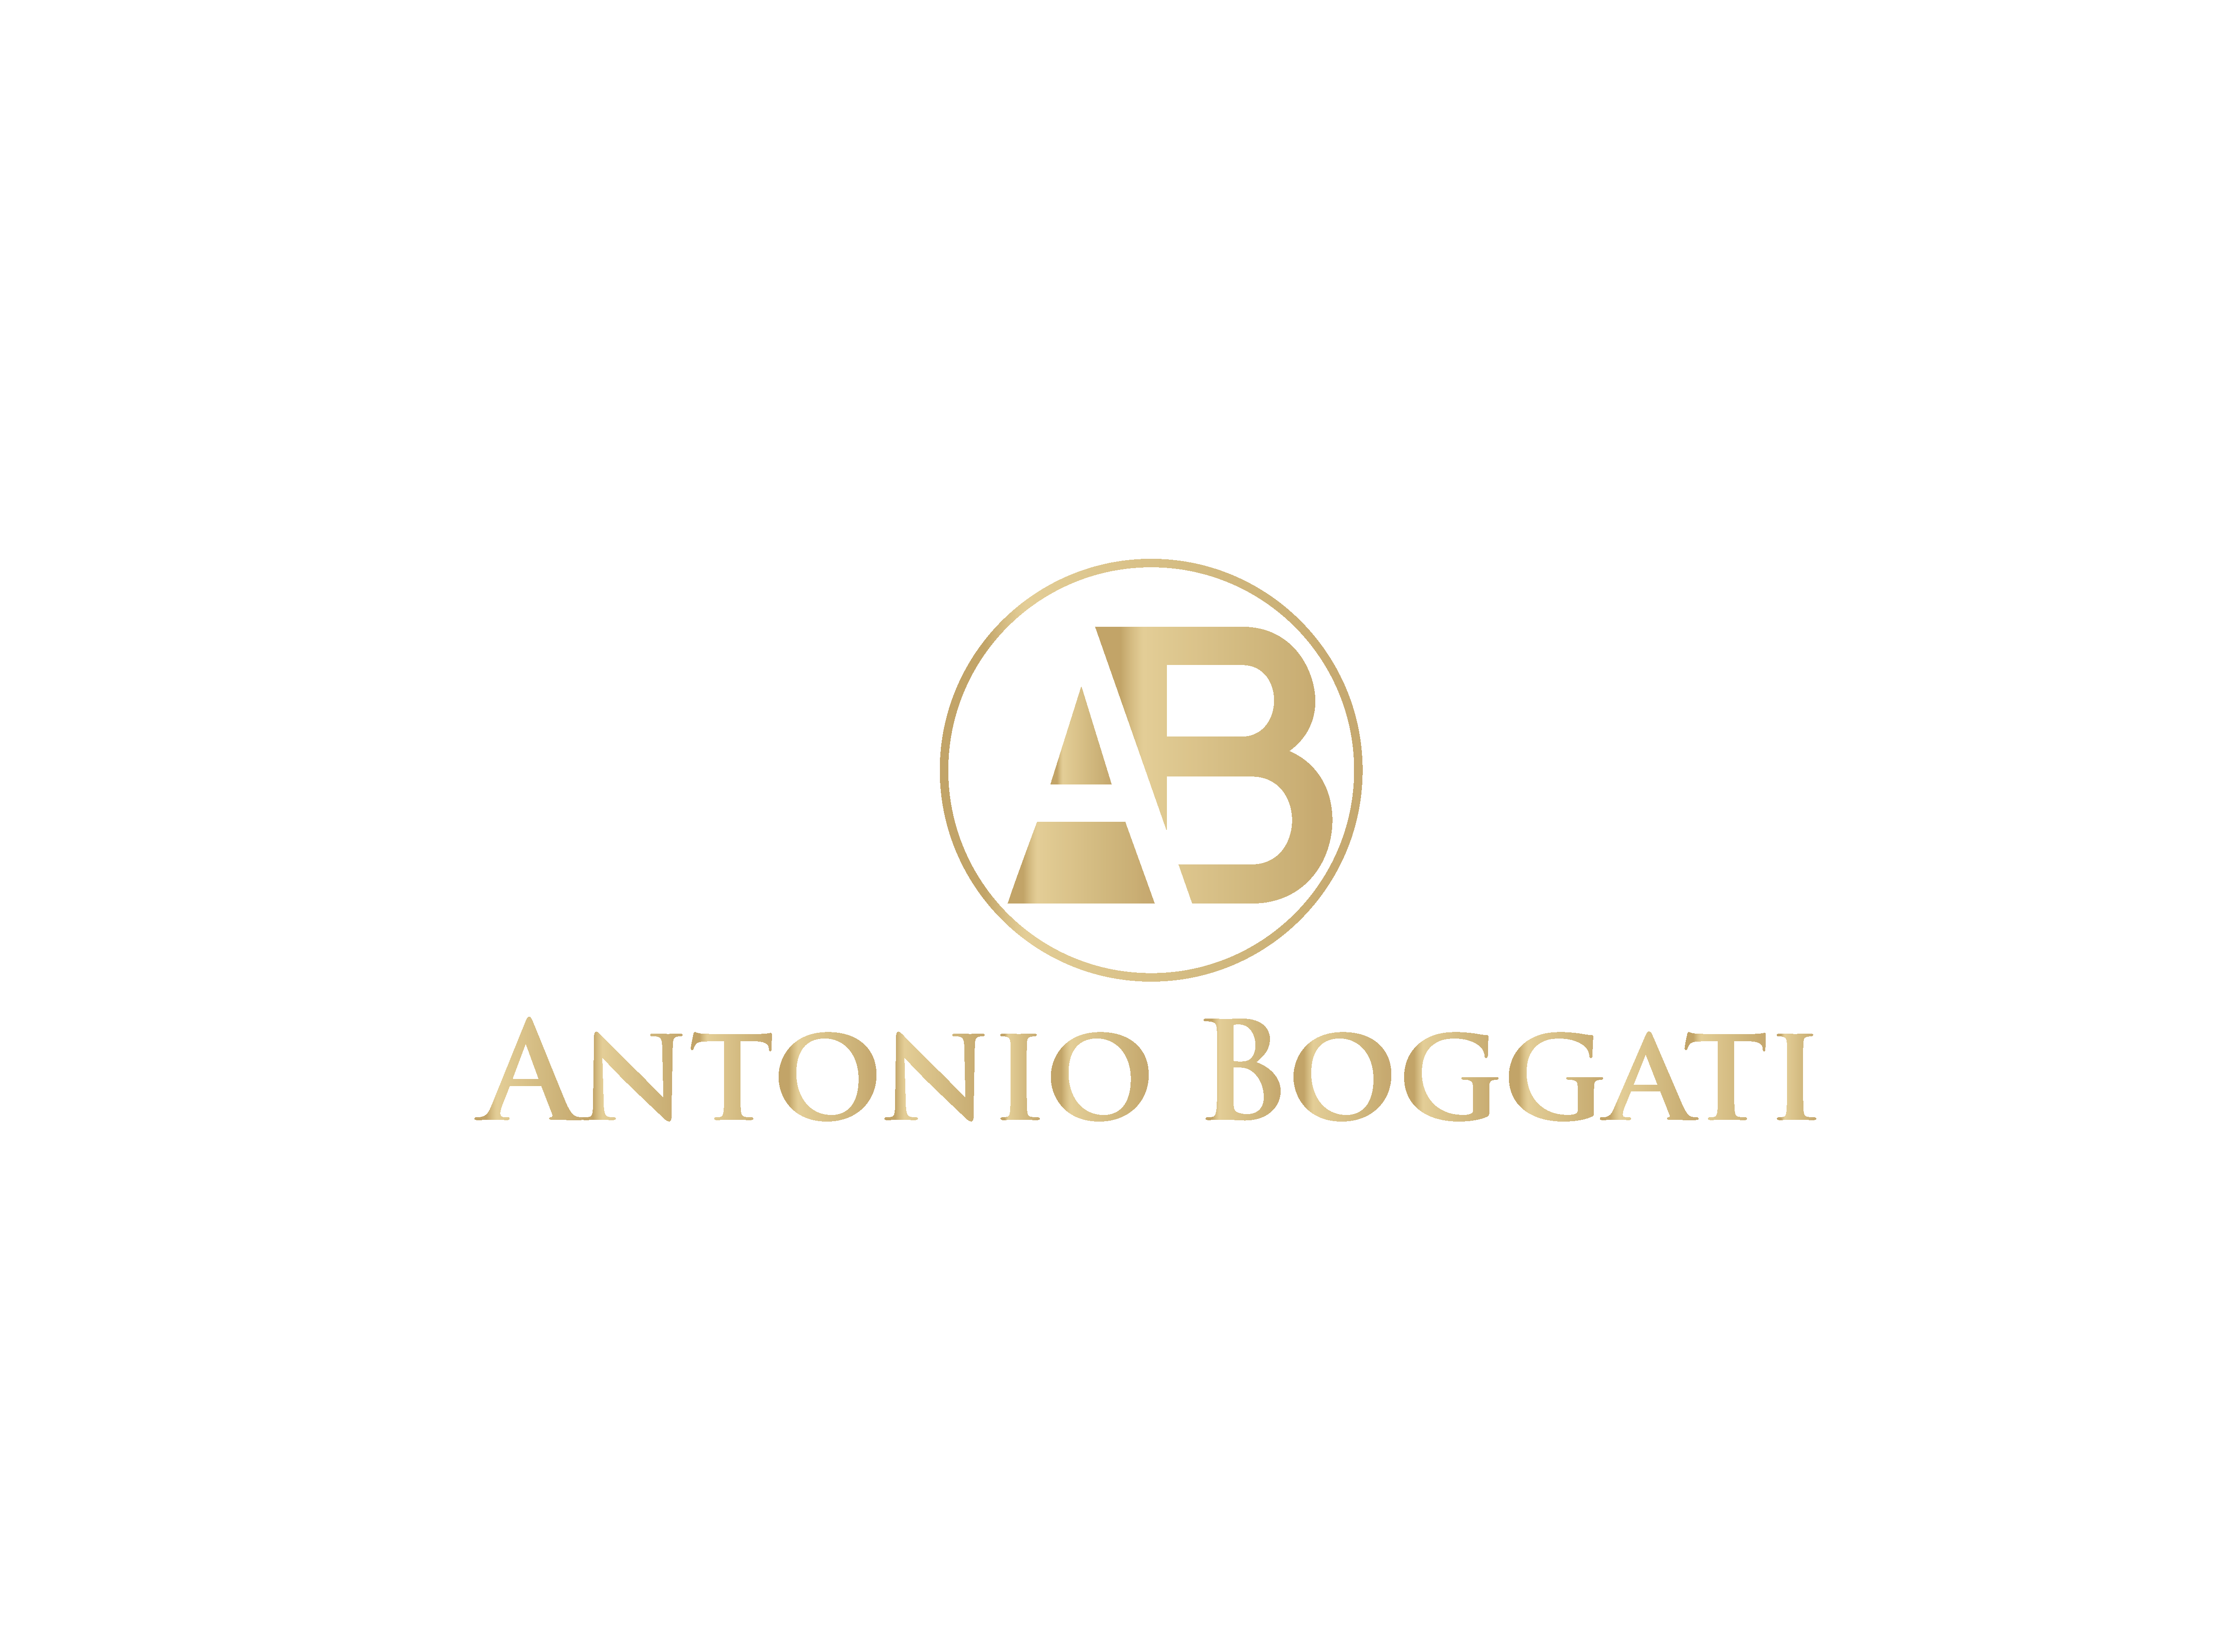 Antonio Boggati